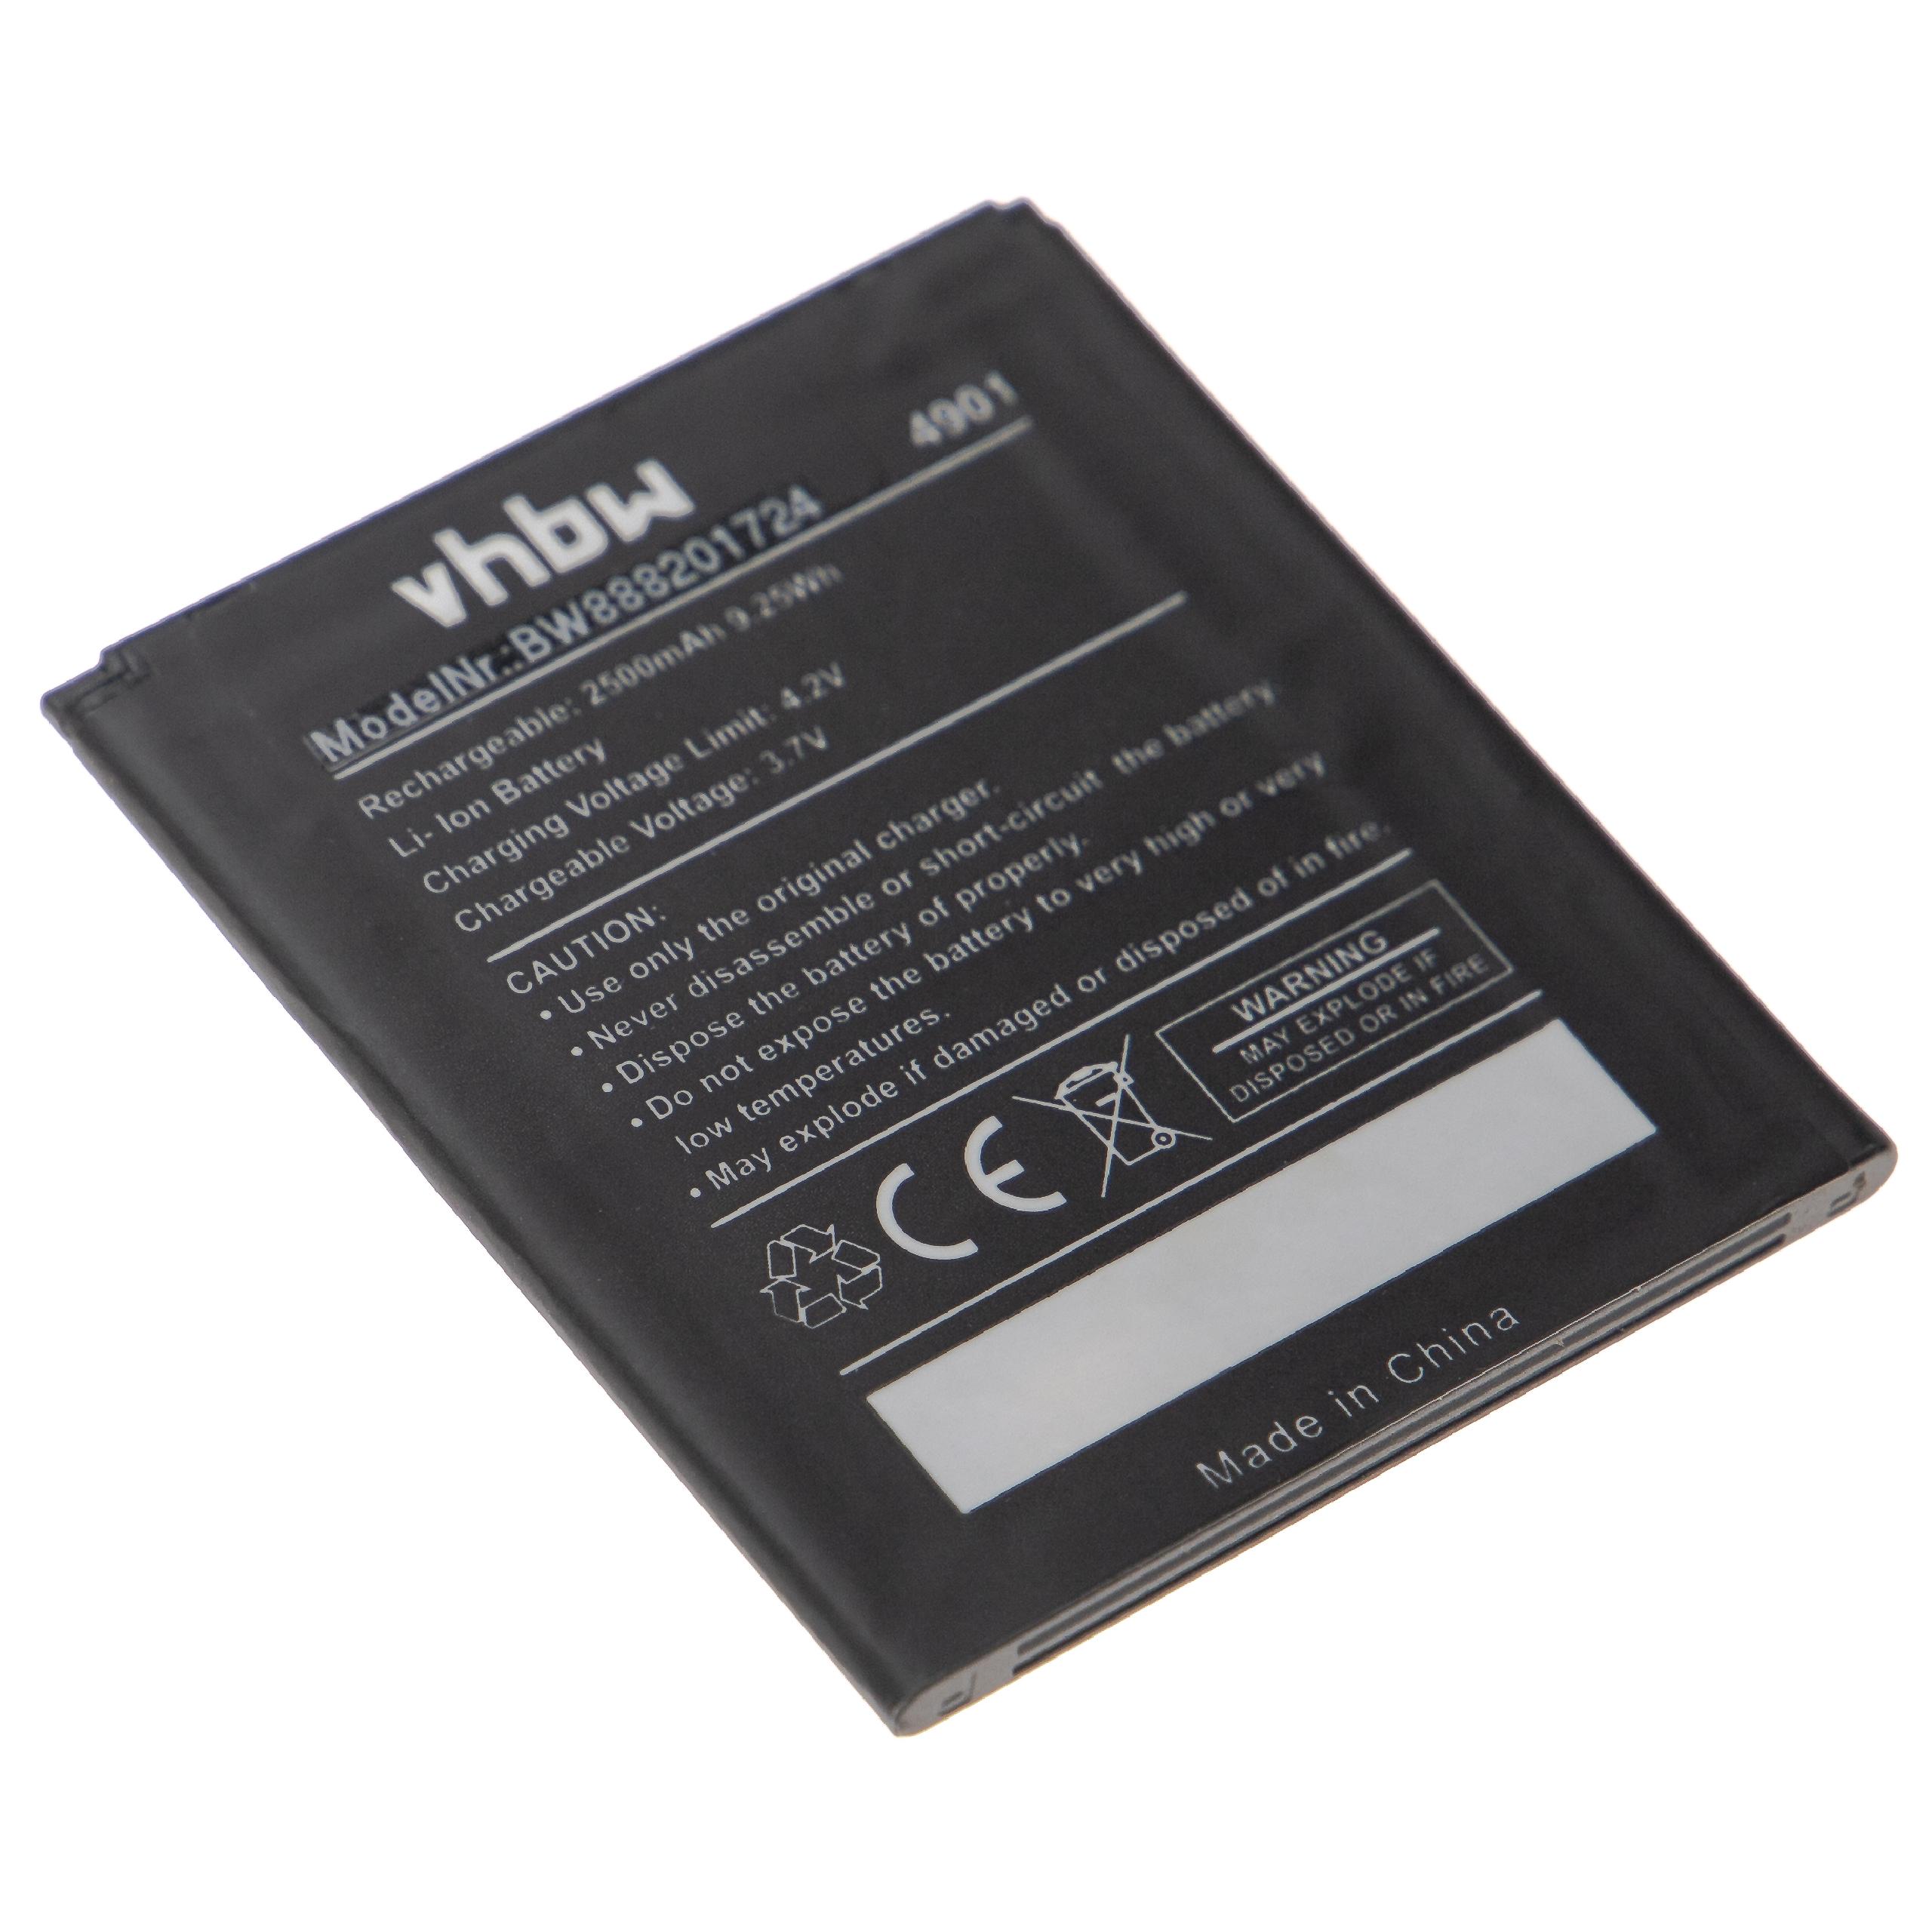 Batterie remplace Wiko 4901 pour téléphone portable - 2500mAh, 3,7V, Li-polymère